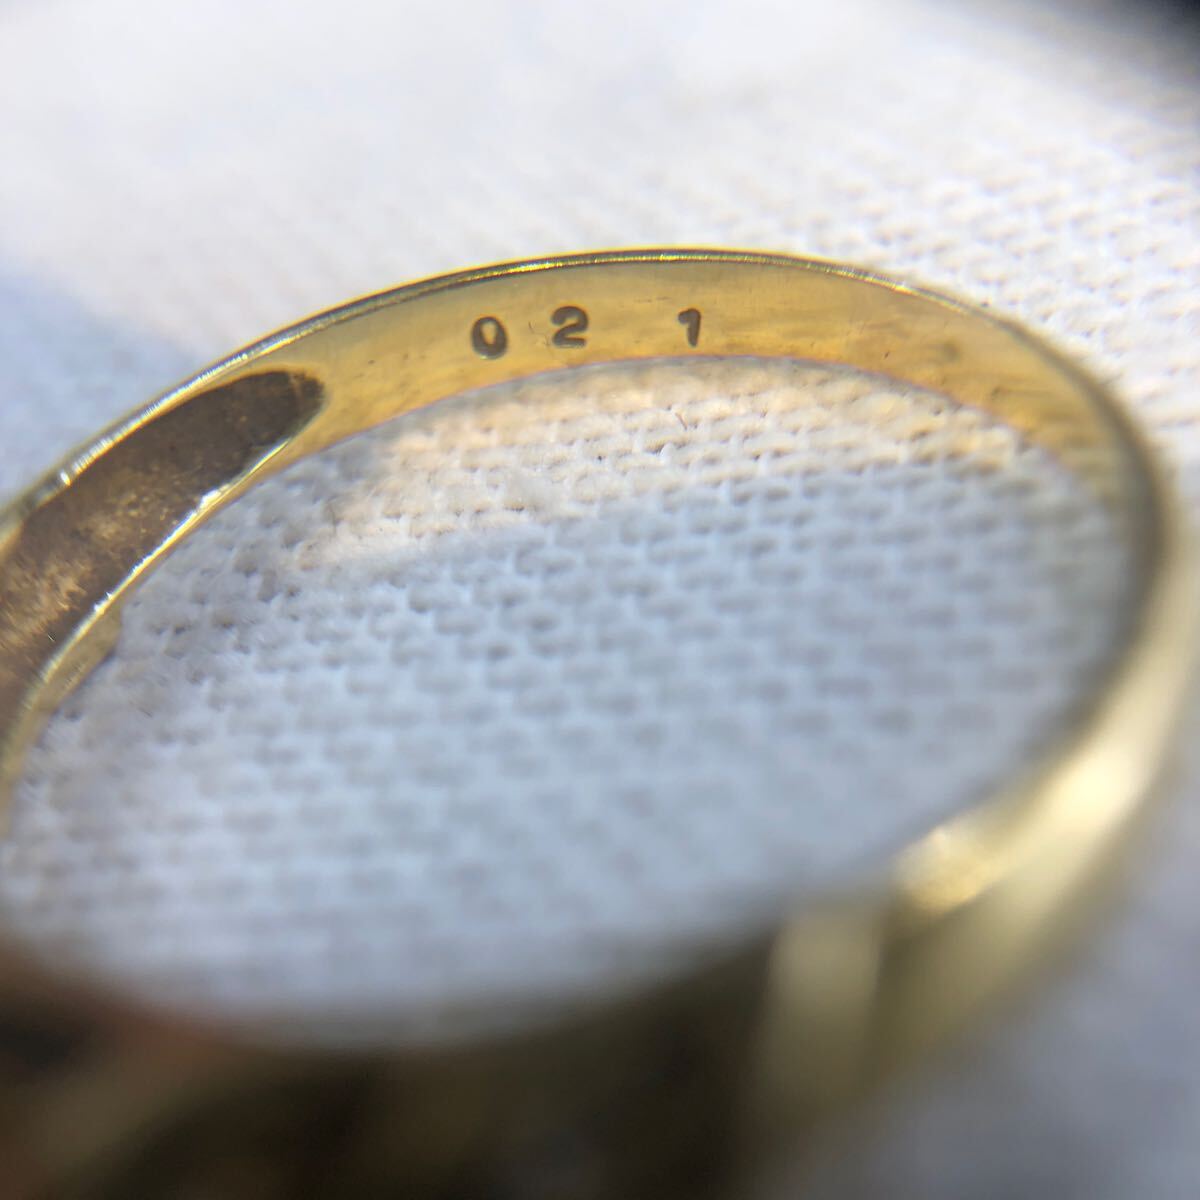  кольцо кольцо бриллиант 5 камень 0.21 carat K18 18 золотой желтое золото аксессуары драгоценный металл полная масса 2.1g 12.5 номер te The Yinling g